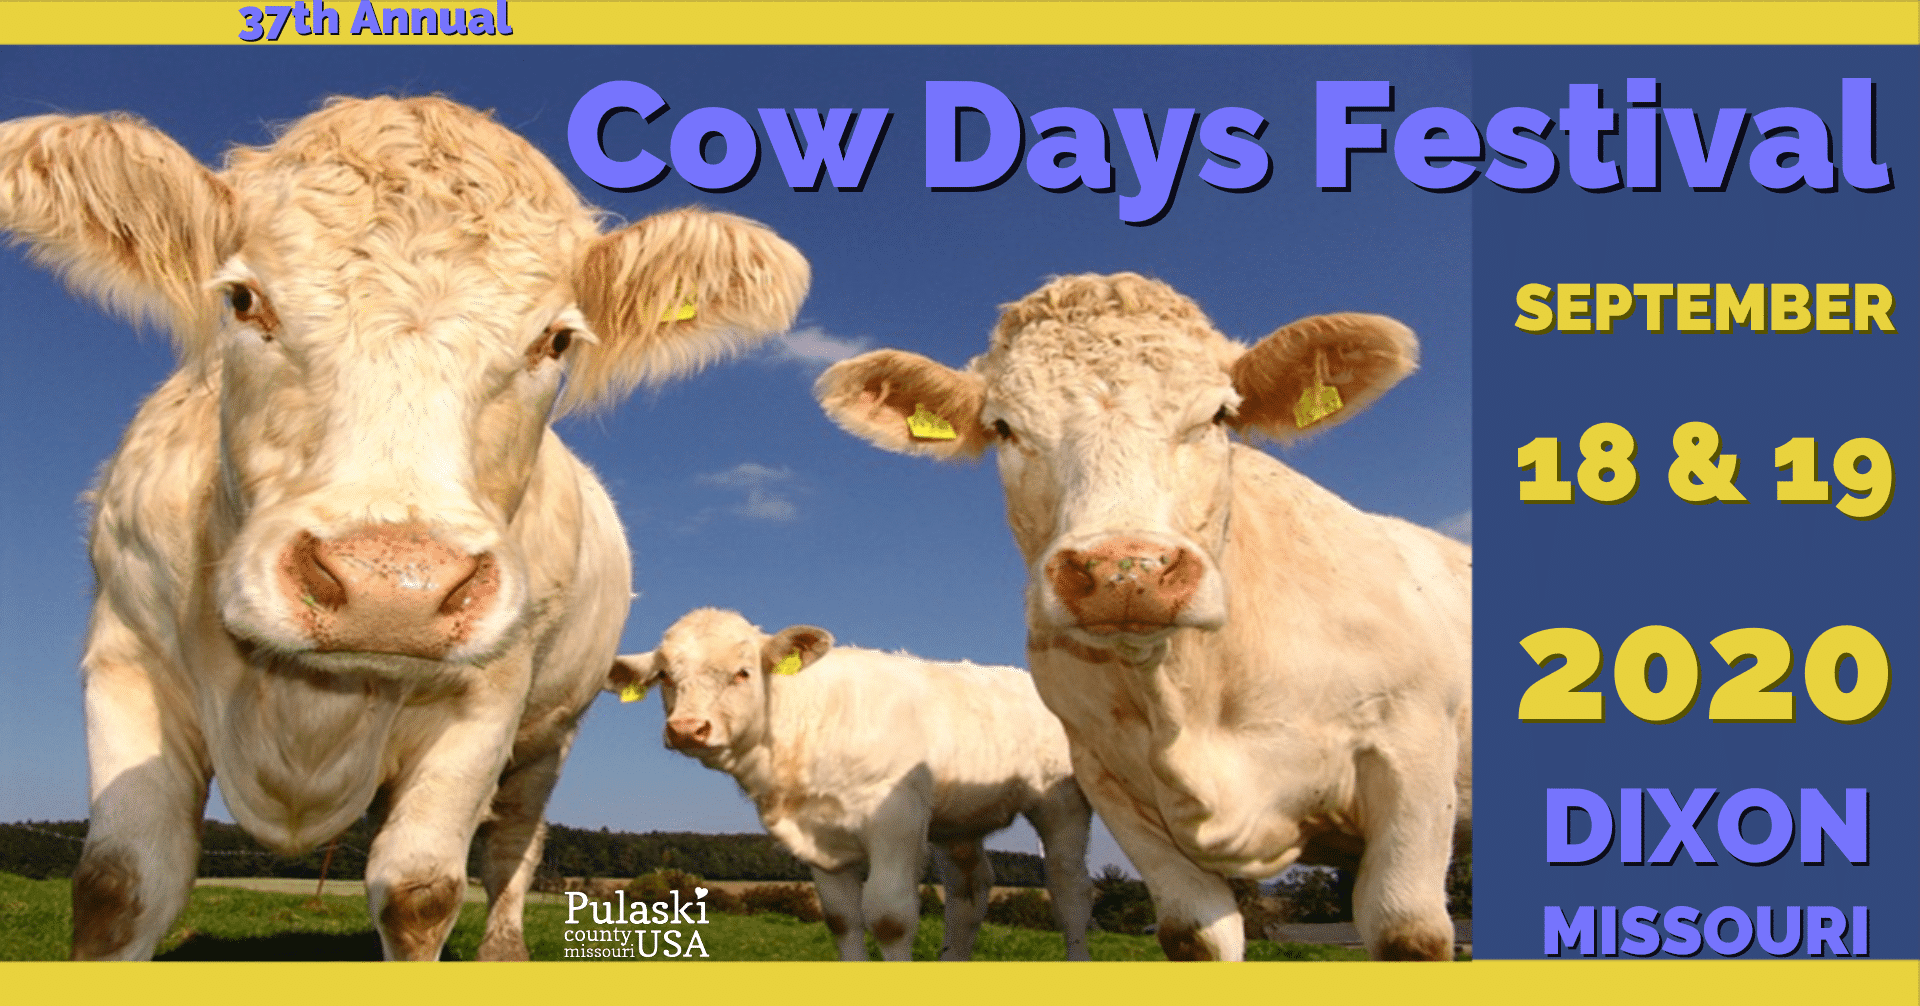 37th Annual Cow Days Festival in Dixon Missouri